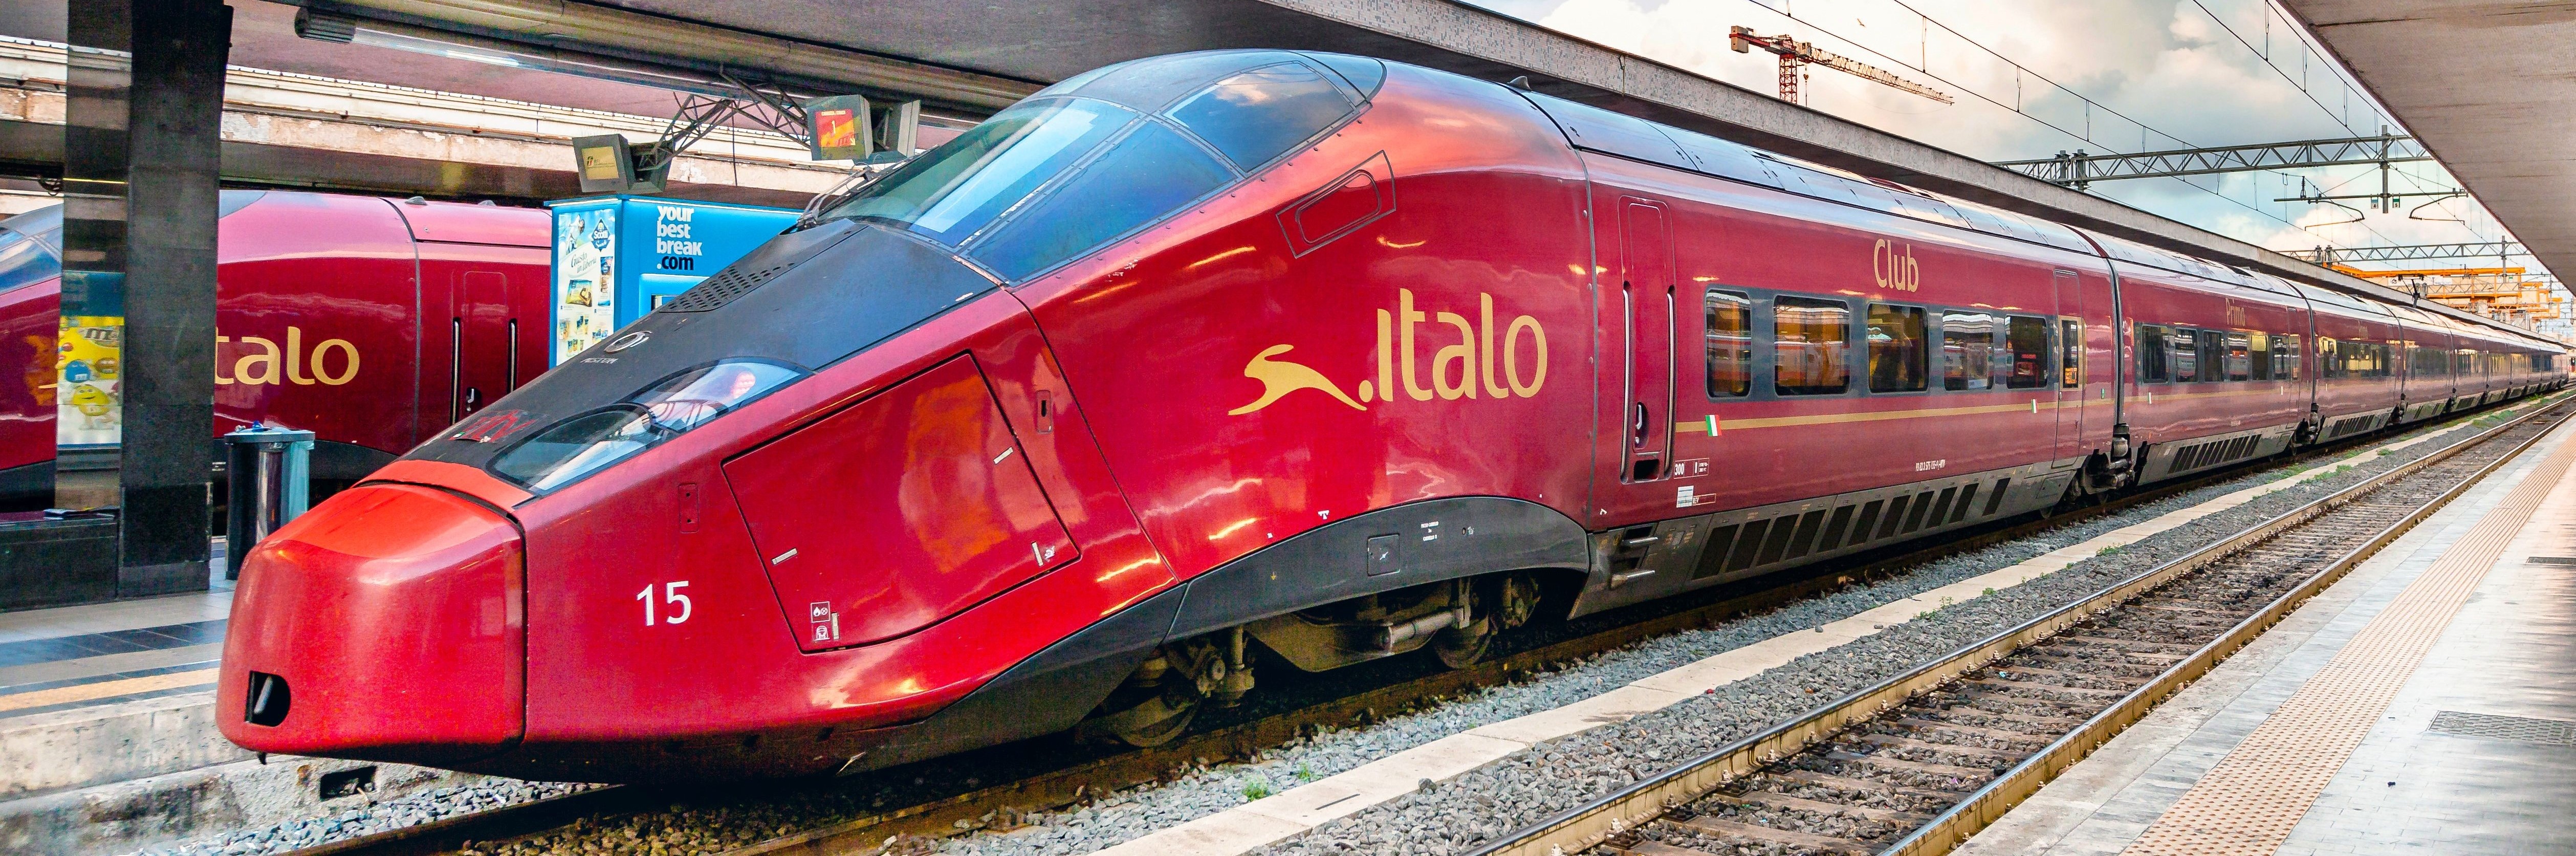 Bahnreise, Eisenbahnreise, Zugreise, First Class Reise, Neapel | IGE - IGE Erlebnisreisen